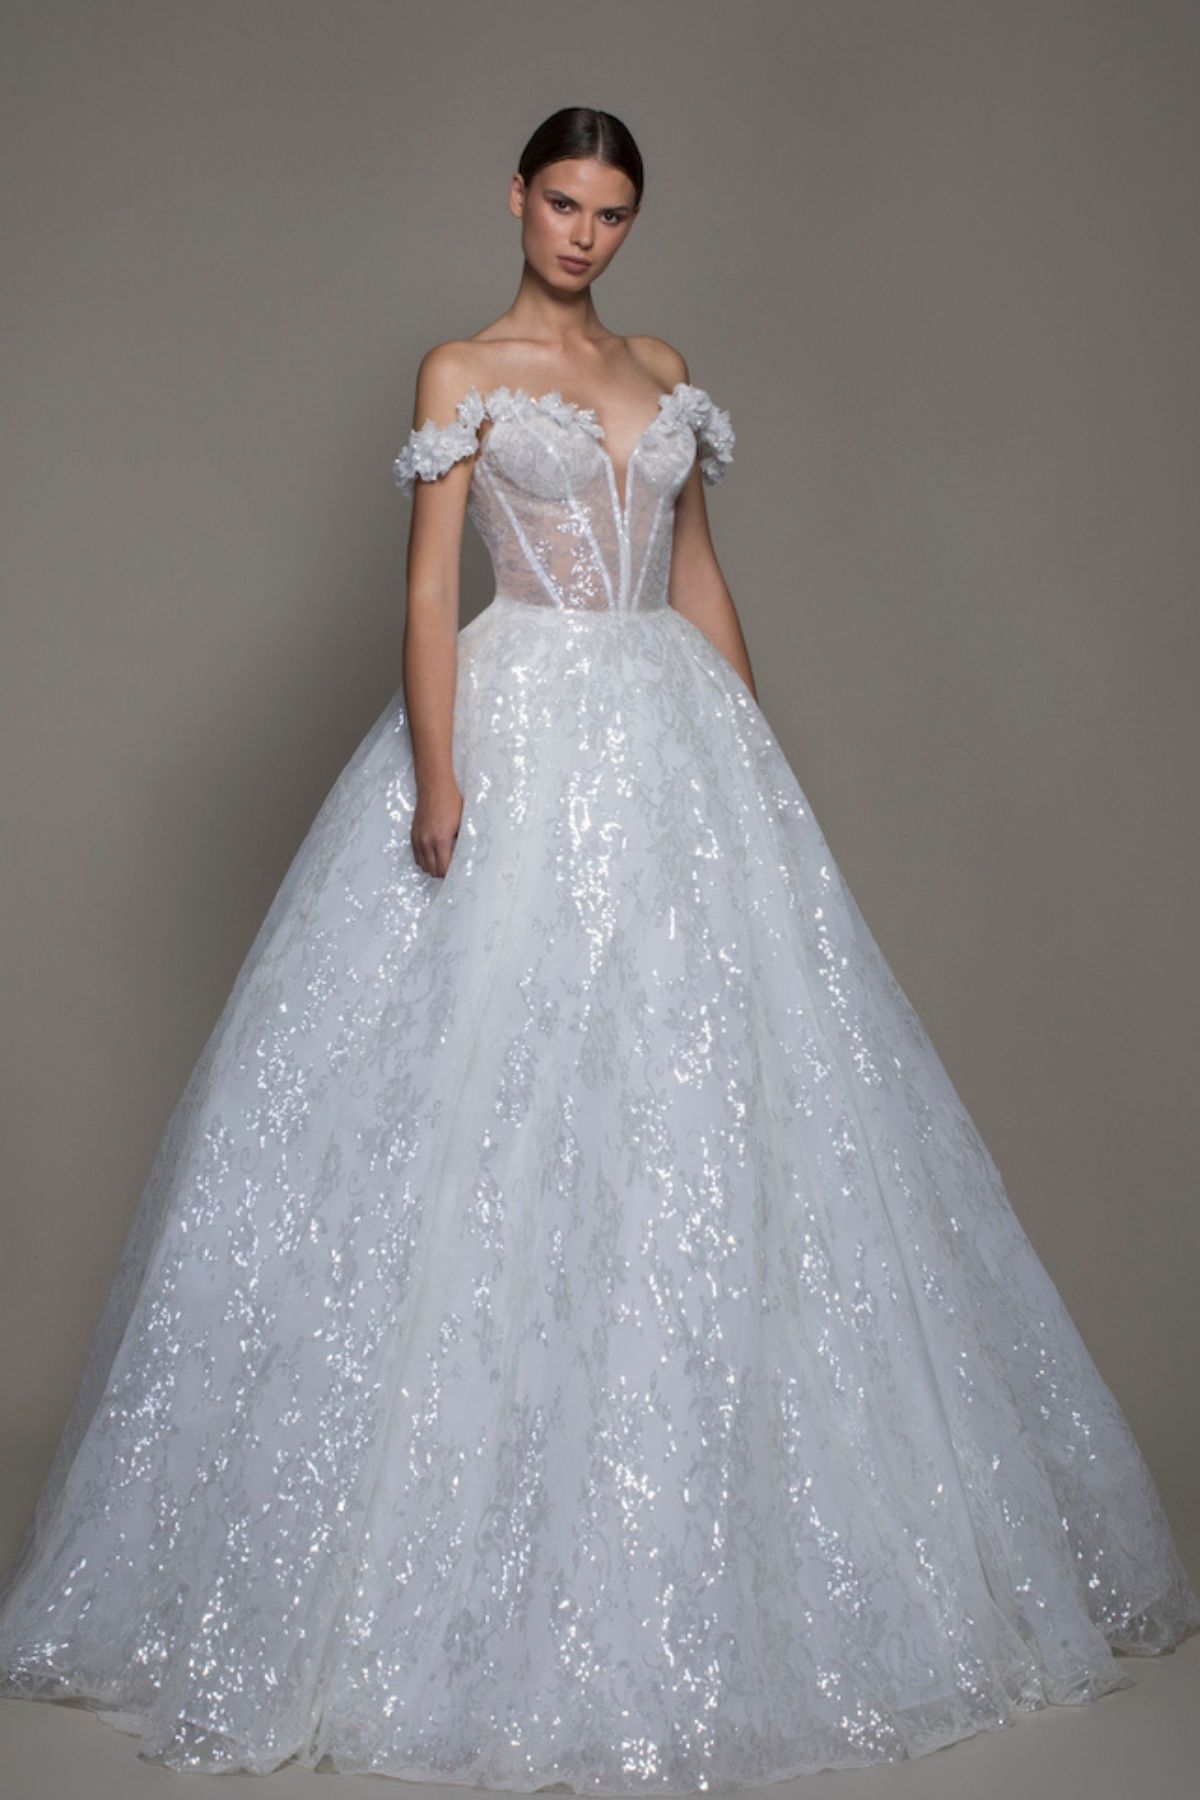 Designer Bridal Dresses over $5k: Our top 10 favorites | Wedding Guides